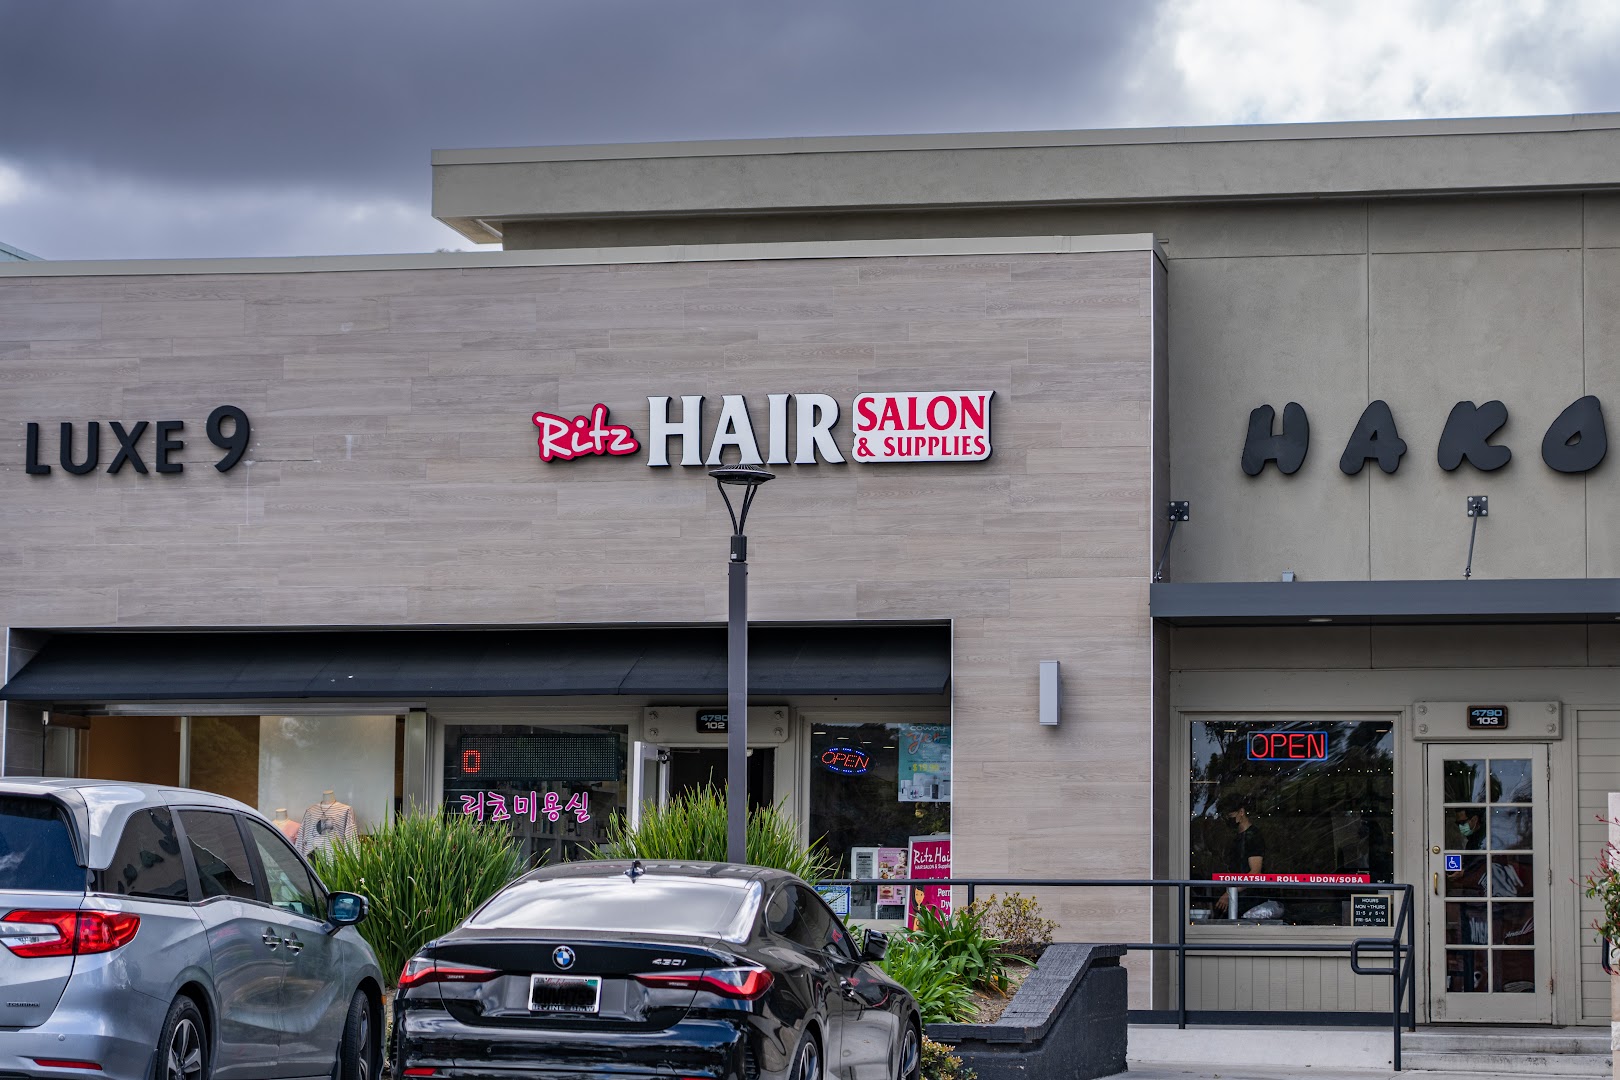 Ritz Hair Salon & Supplies